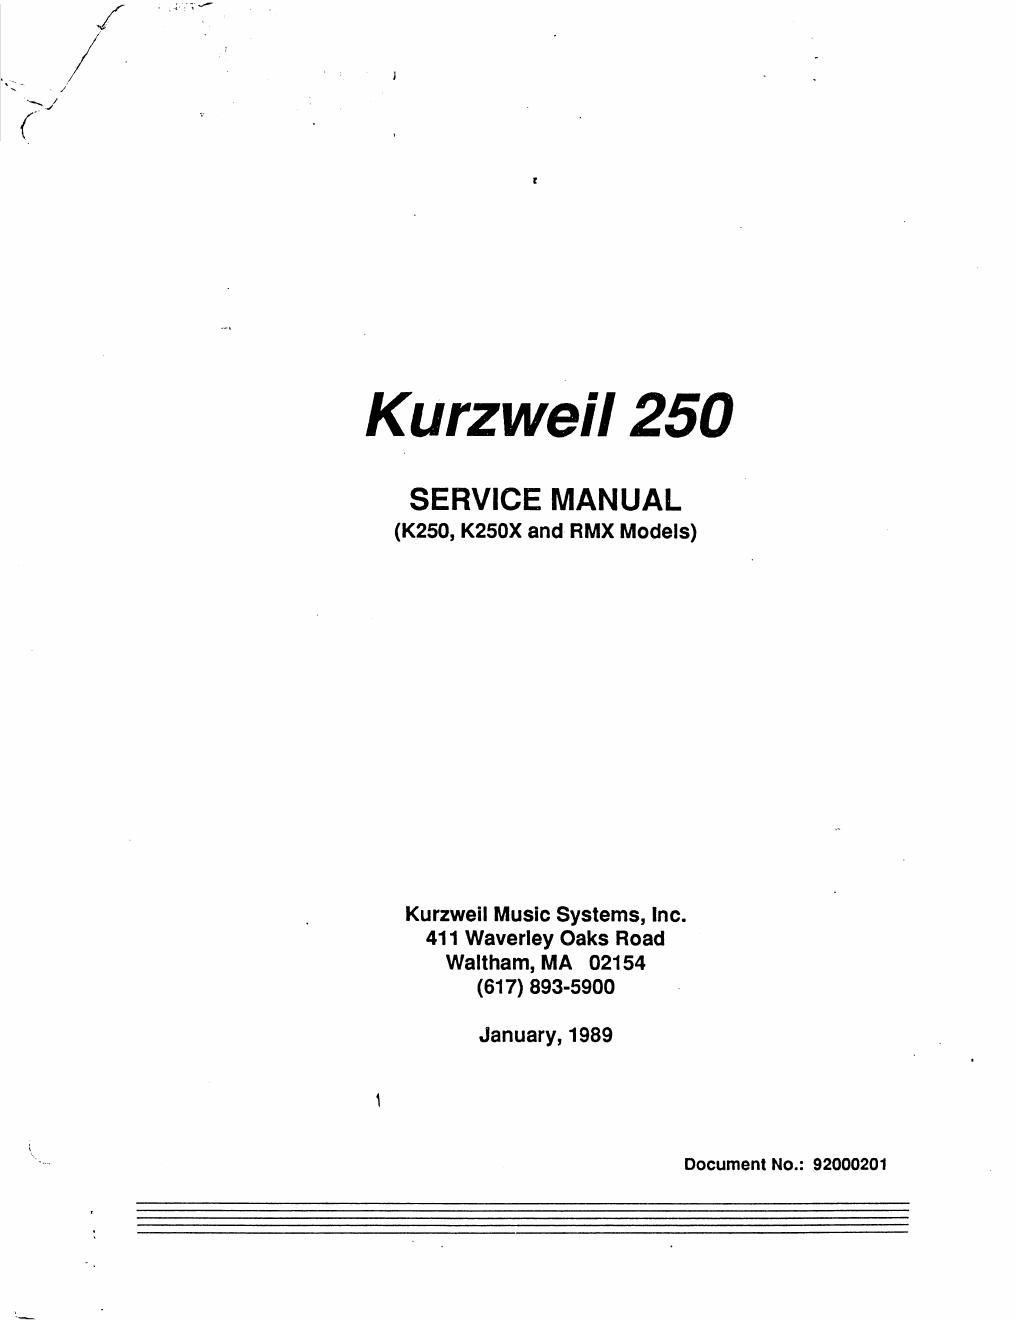 kurzweil 250 service manual